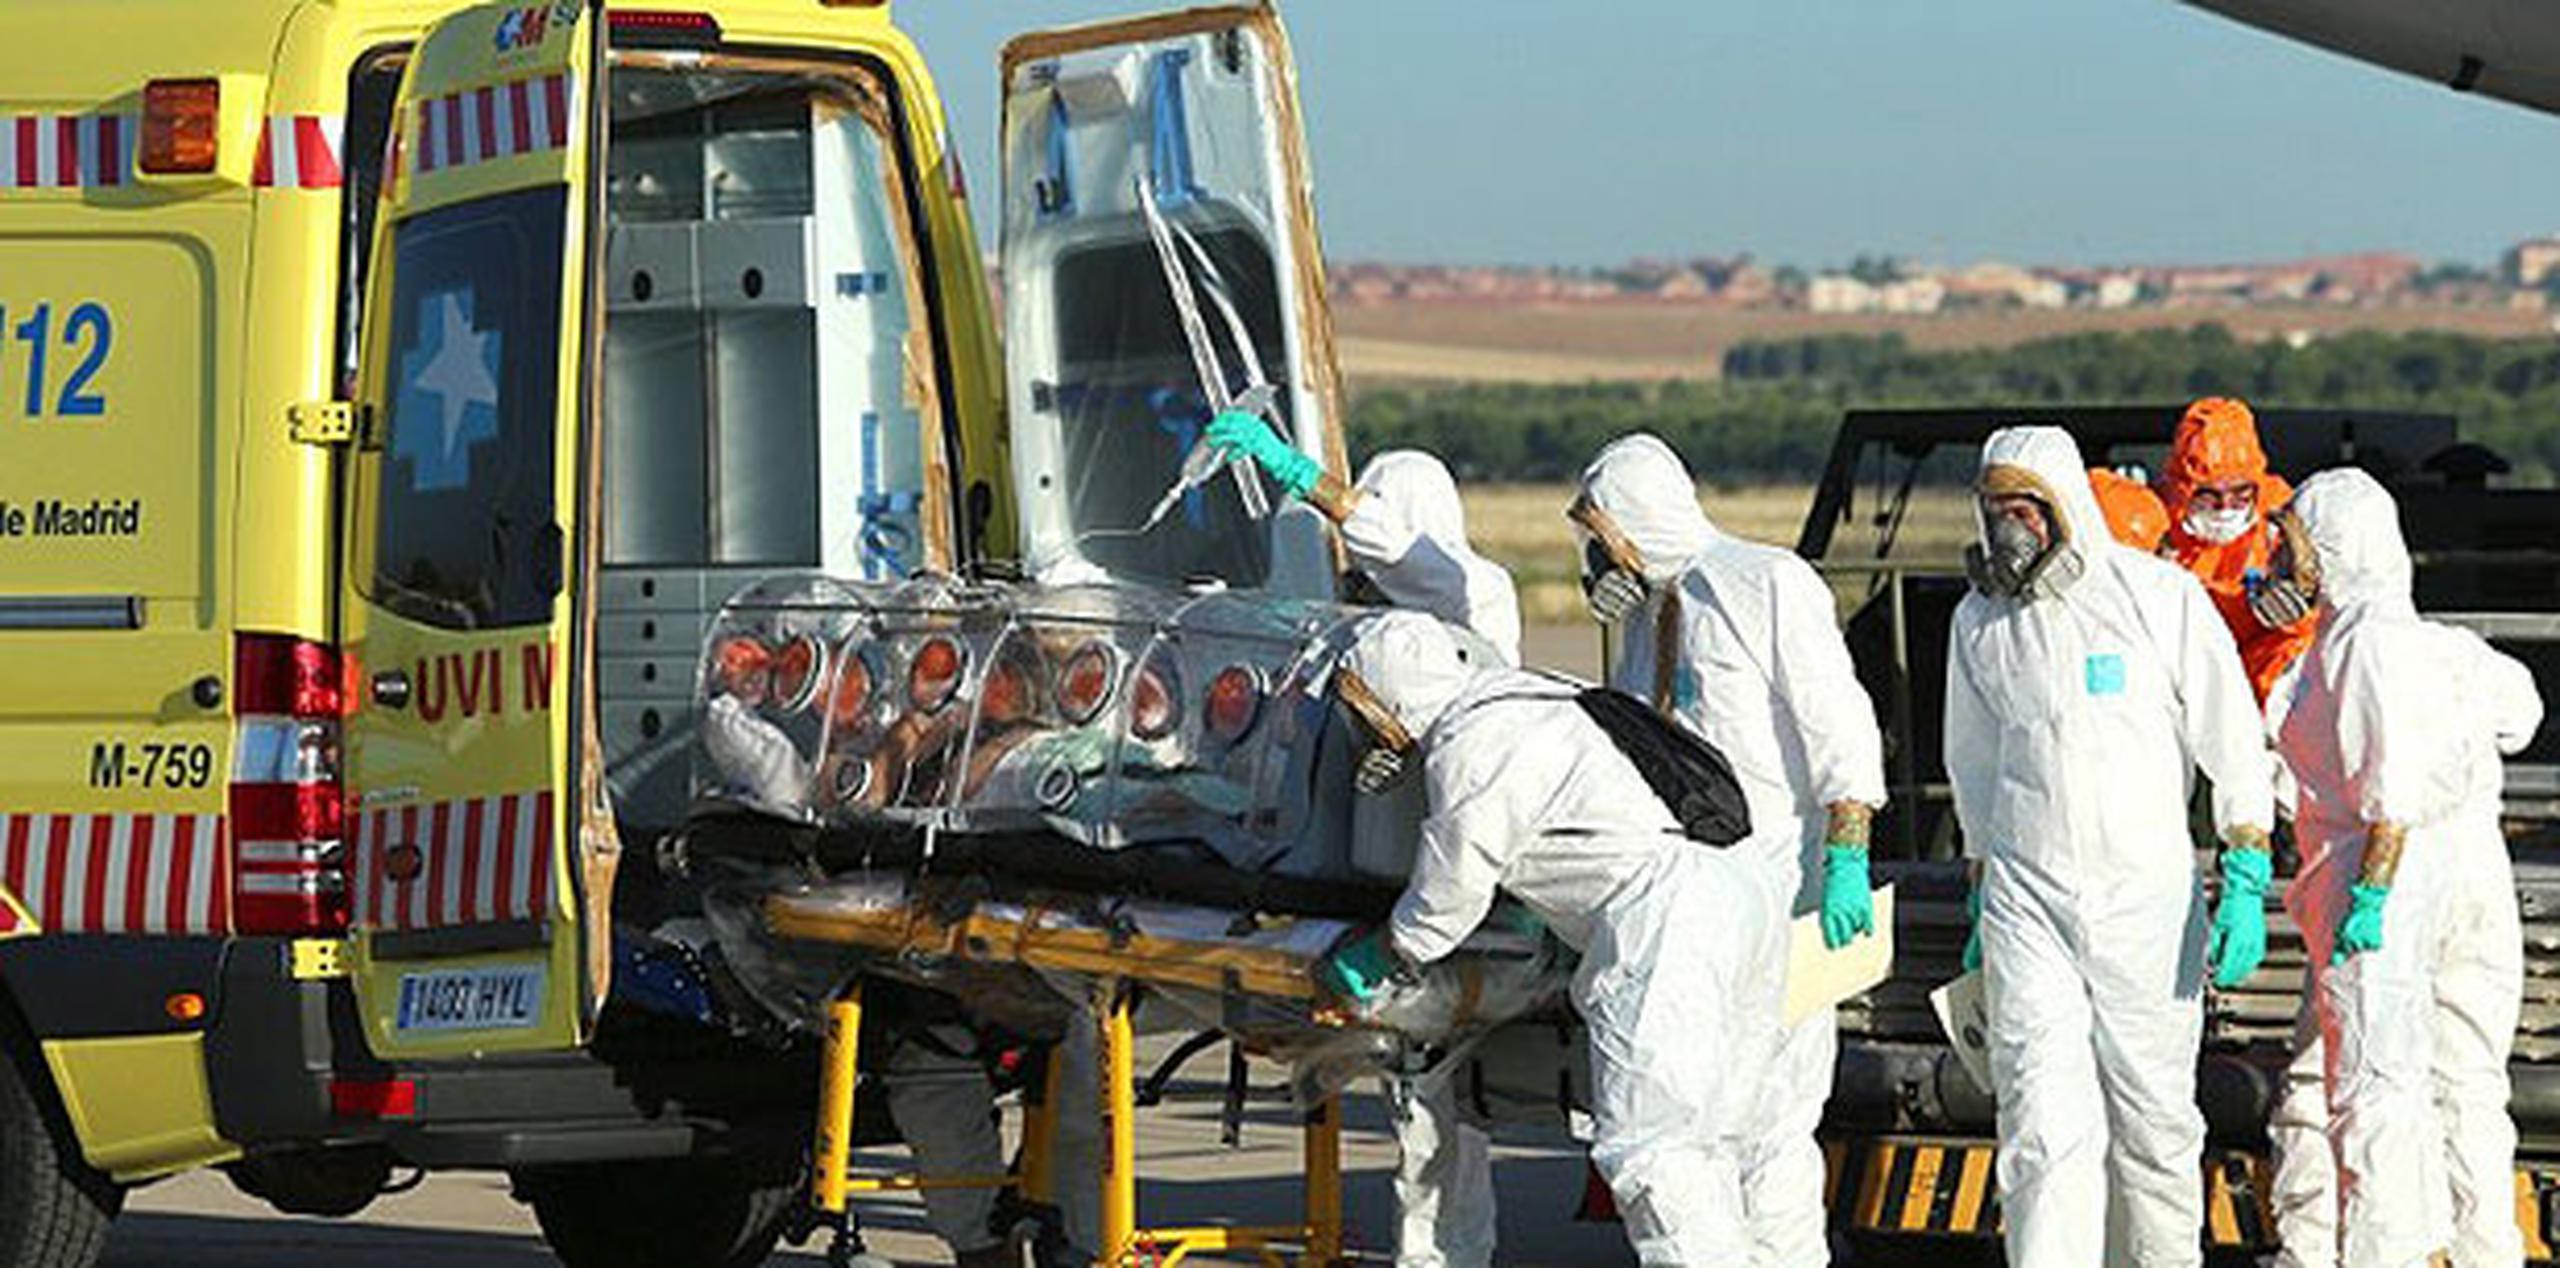 Miguel Pajares, de 75 años, es el primer contagiado con el virus del Ébola que ha llegado a Europa, víctima del mayor brote de esta enfermedad registrado hasta el momento. (AFP)